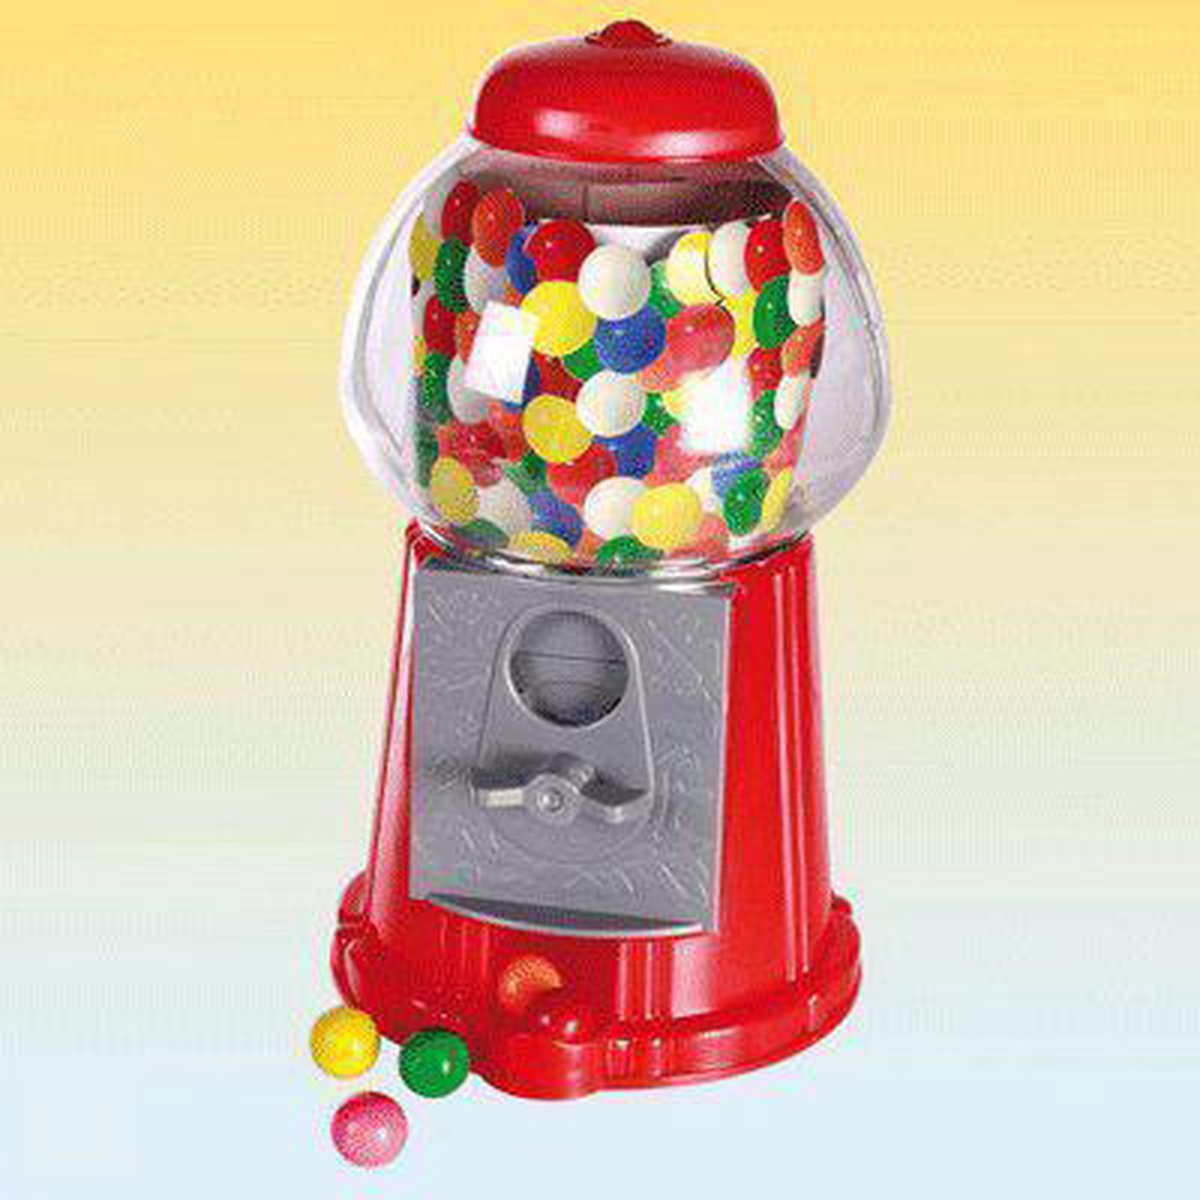 Kauwgomballen automaat 22 cm | bol.com